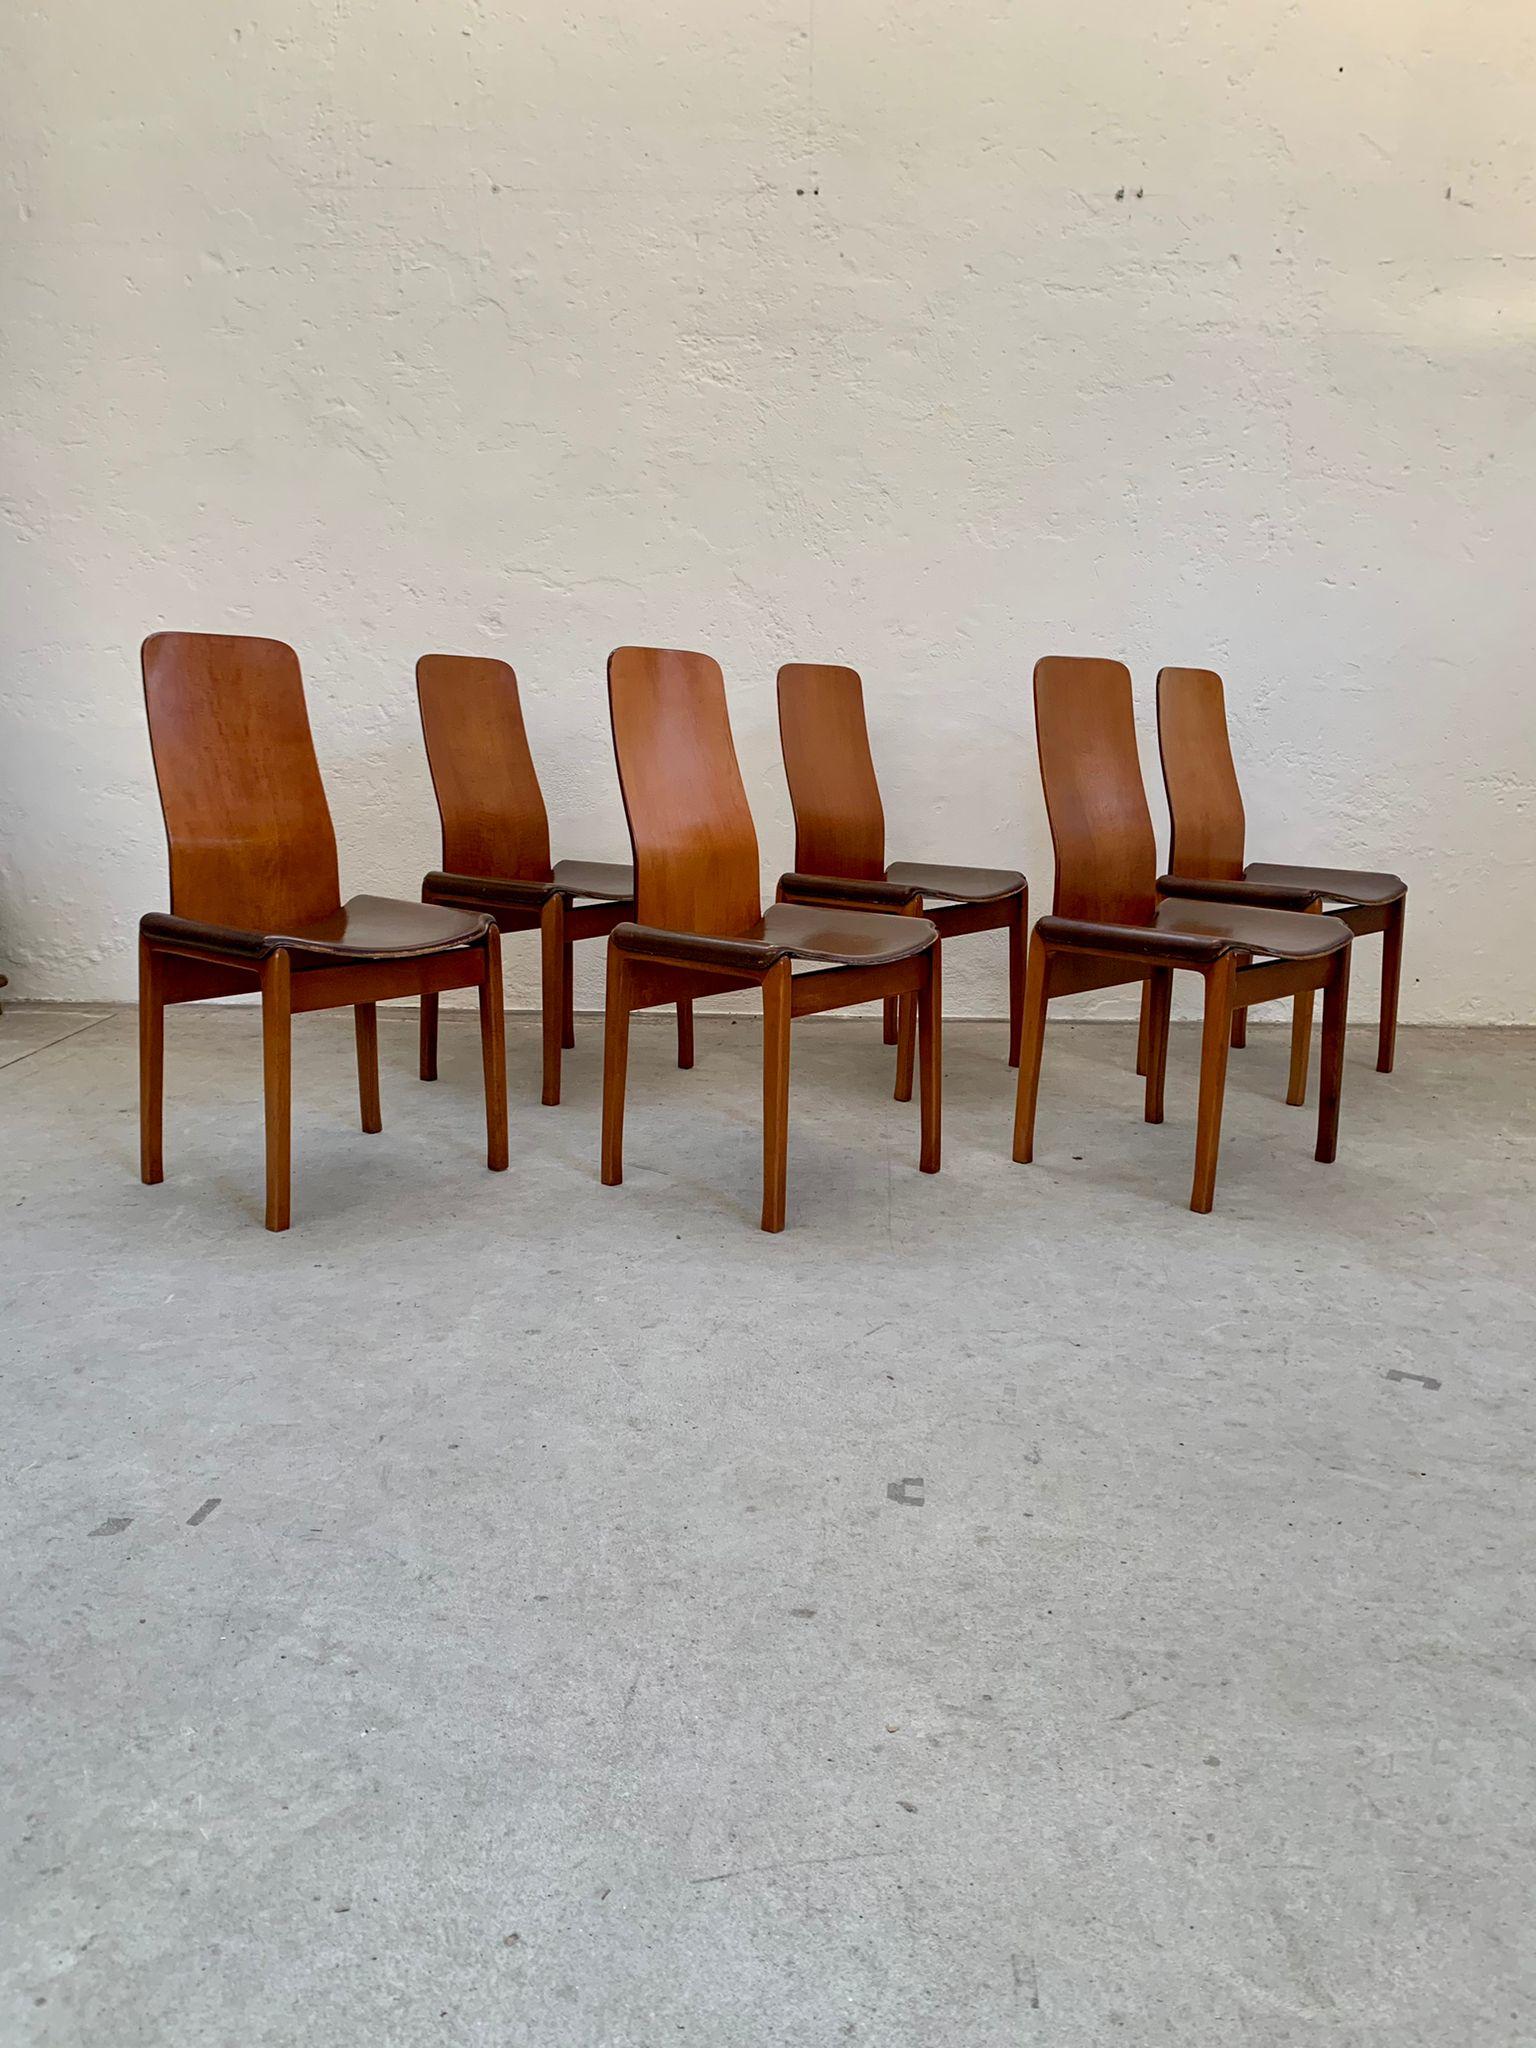 Ensemble de chaises Fiorenza en bois et cuir de Tito Agnoli pour Molteni, 1968
La chaise est en noyer, l'assise est de couleur noisette.
L'auteur est Tito Agnoli pour Molteni.
L'ensemble de six chaises est en bon état, de légers signes d'usure sont